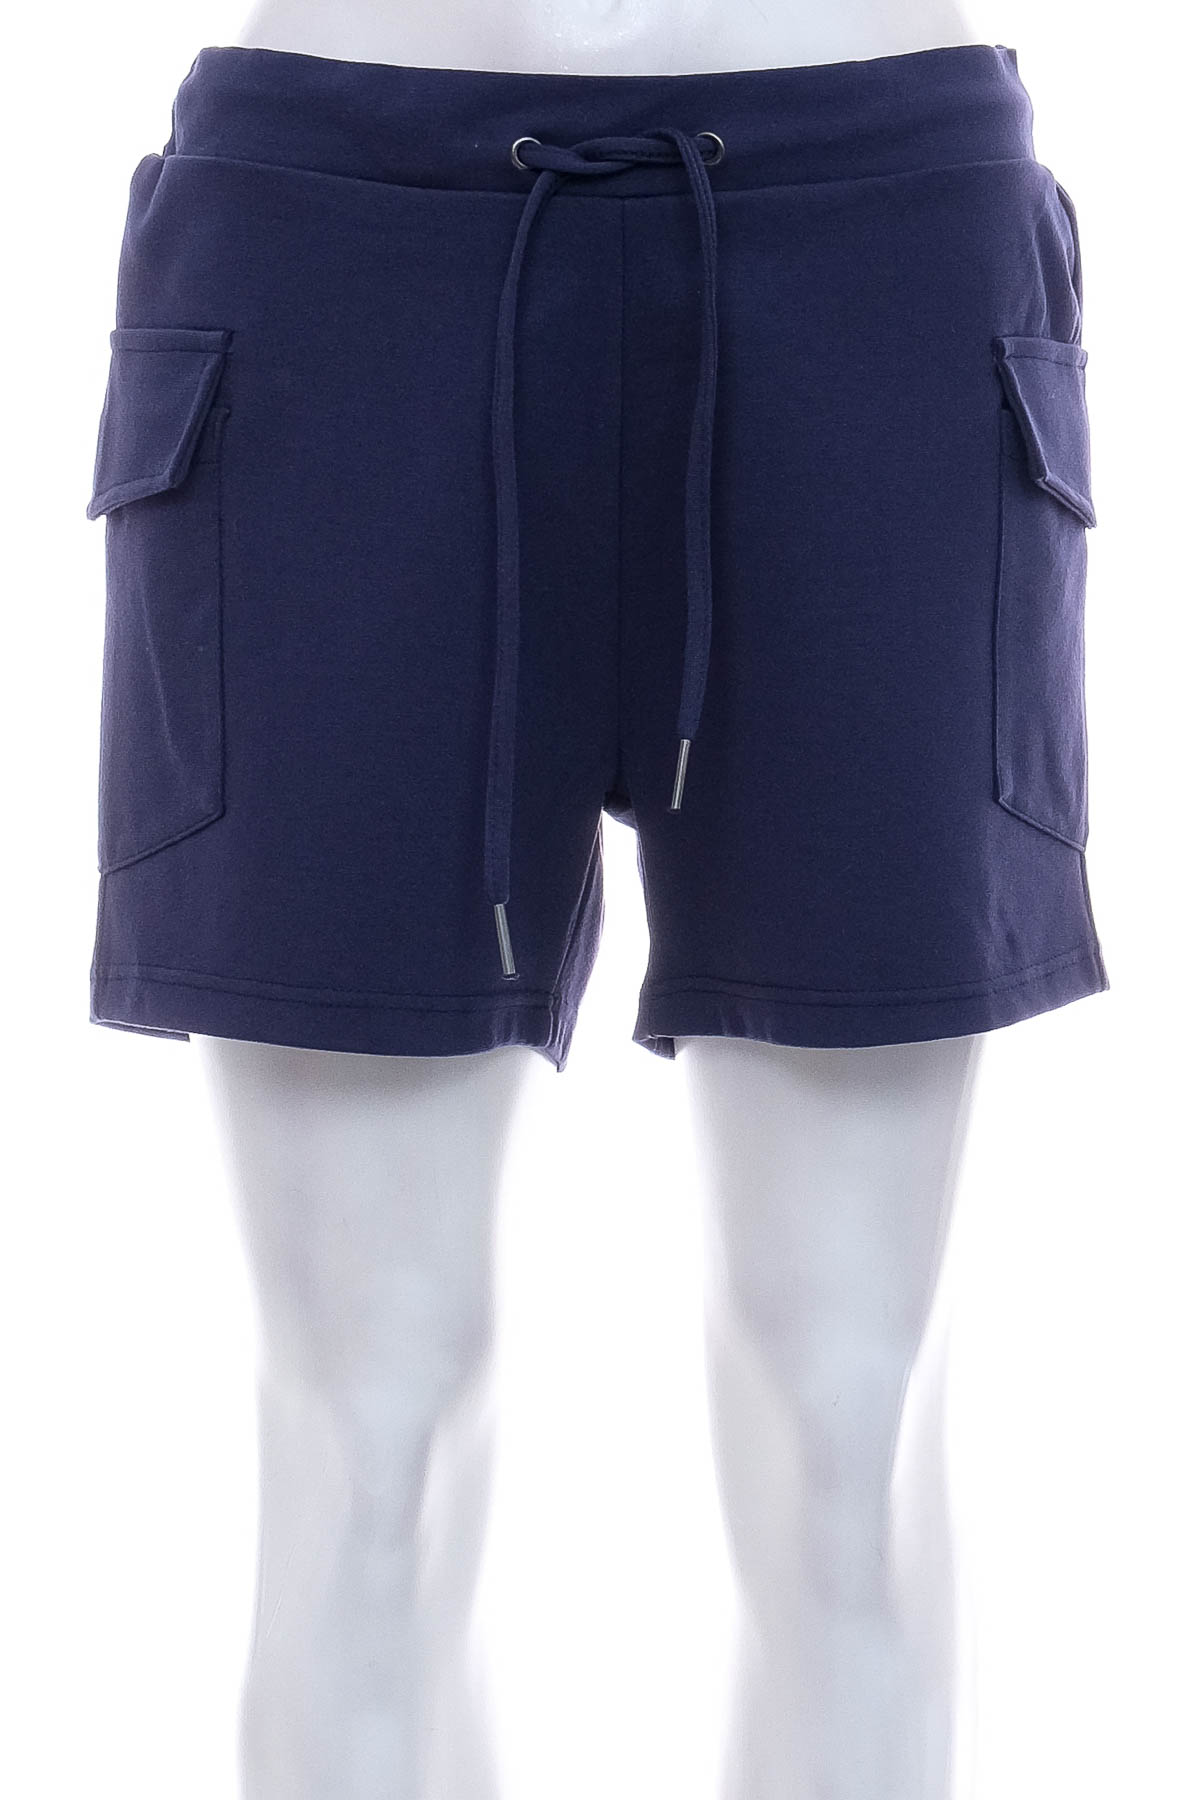 Krótkie spodnie damskie - 9TH Avenue - 0